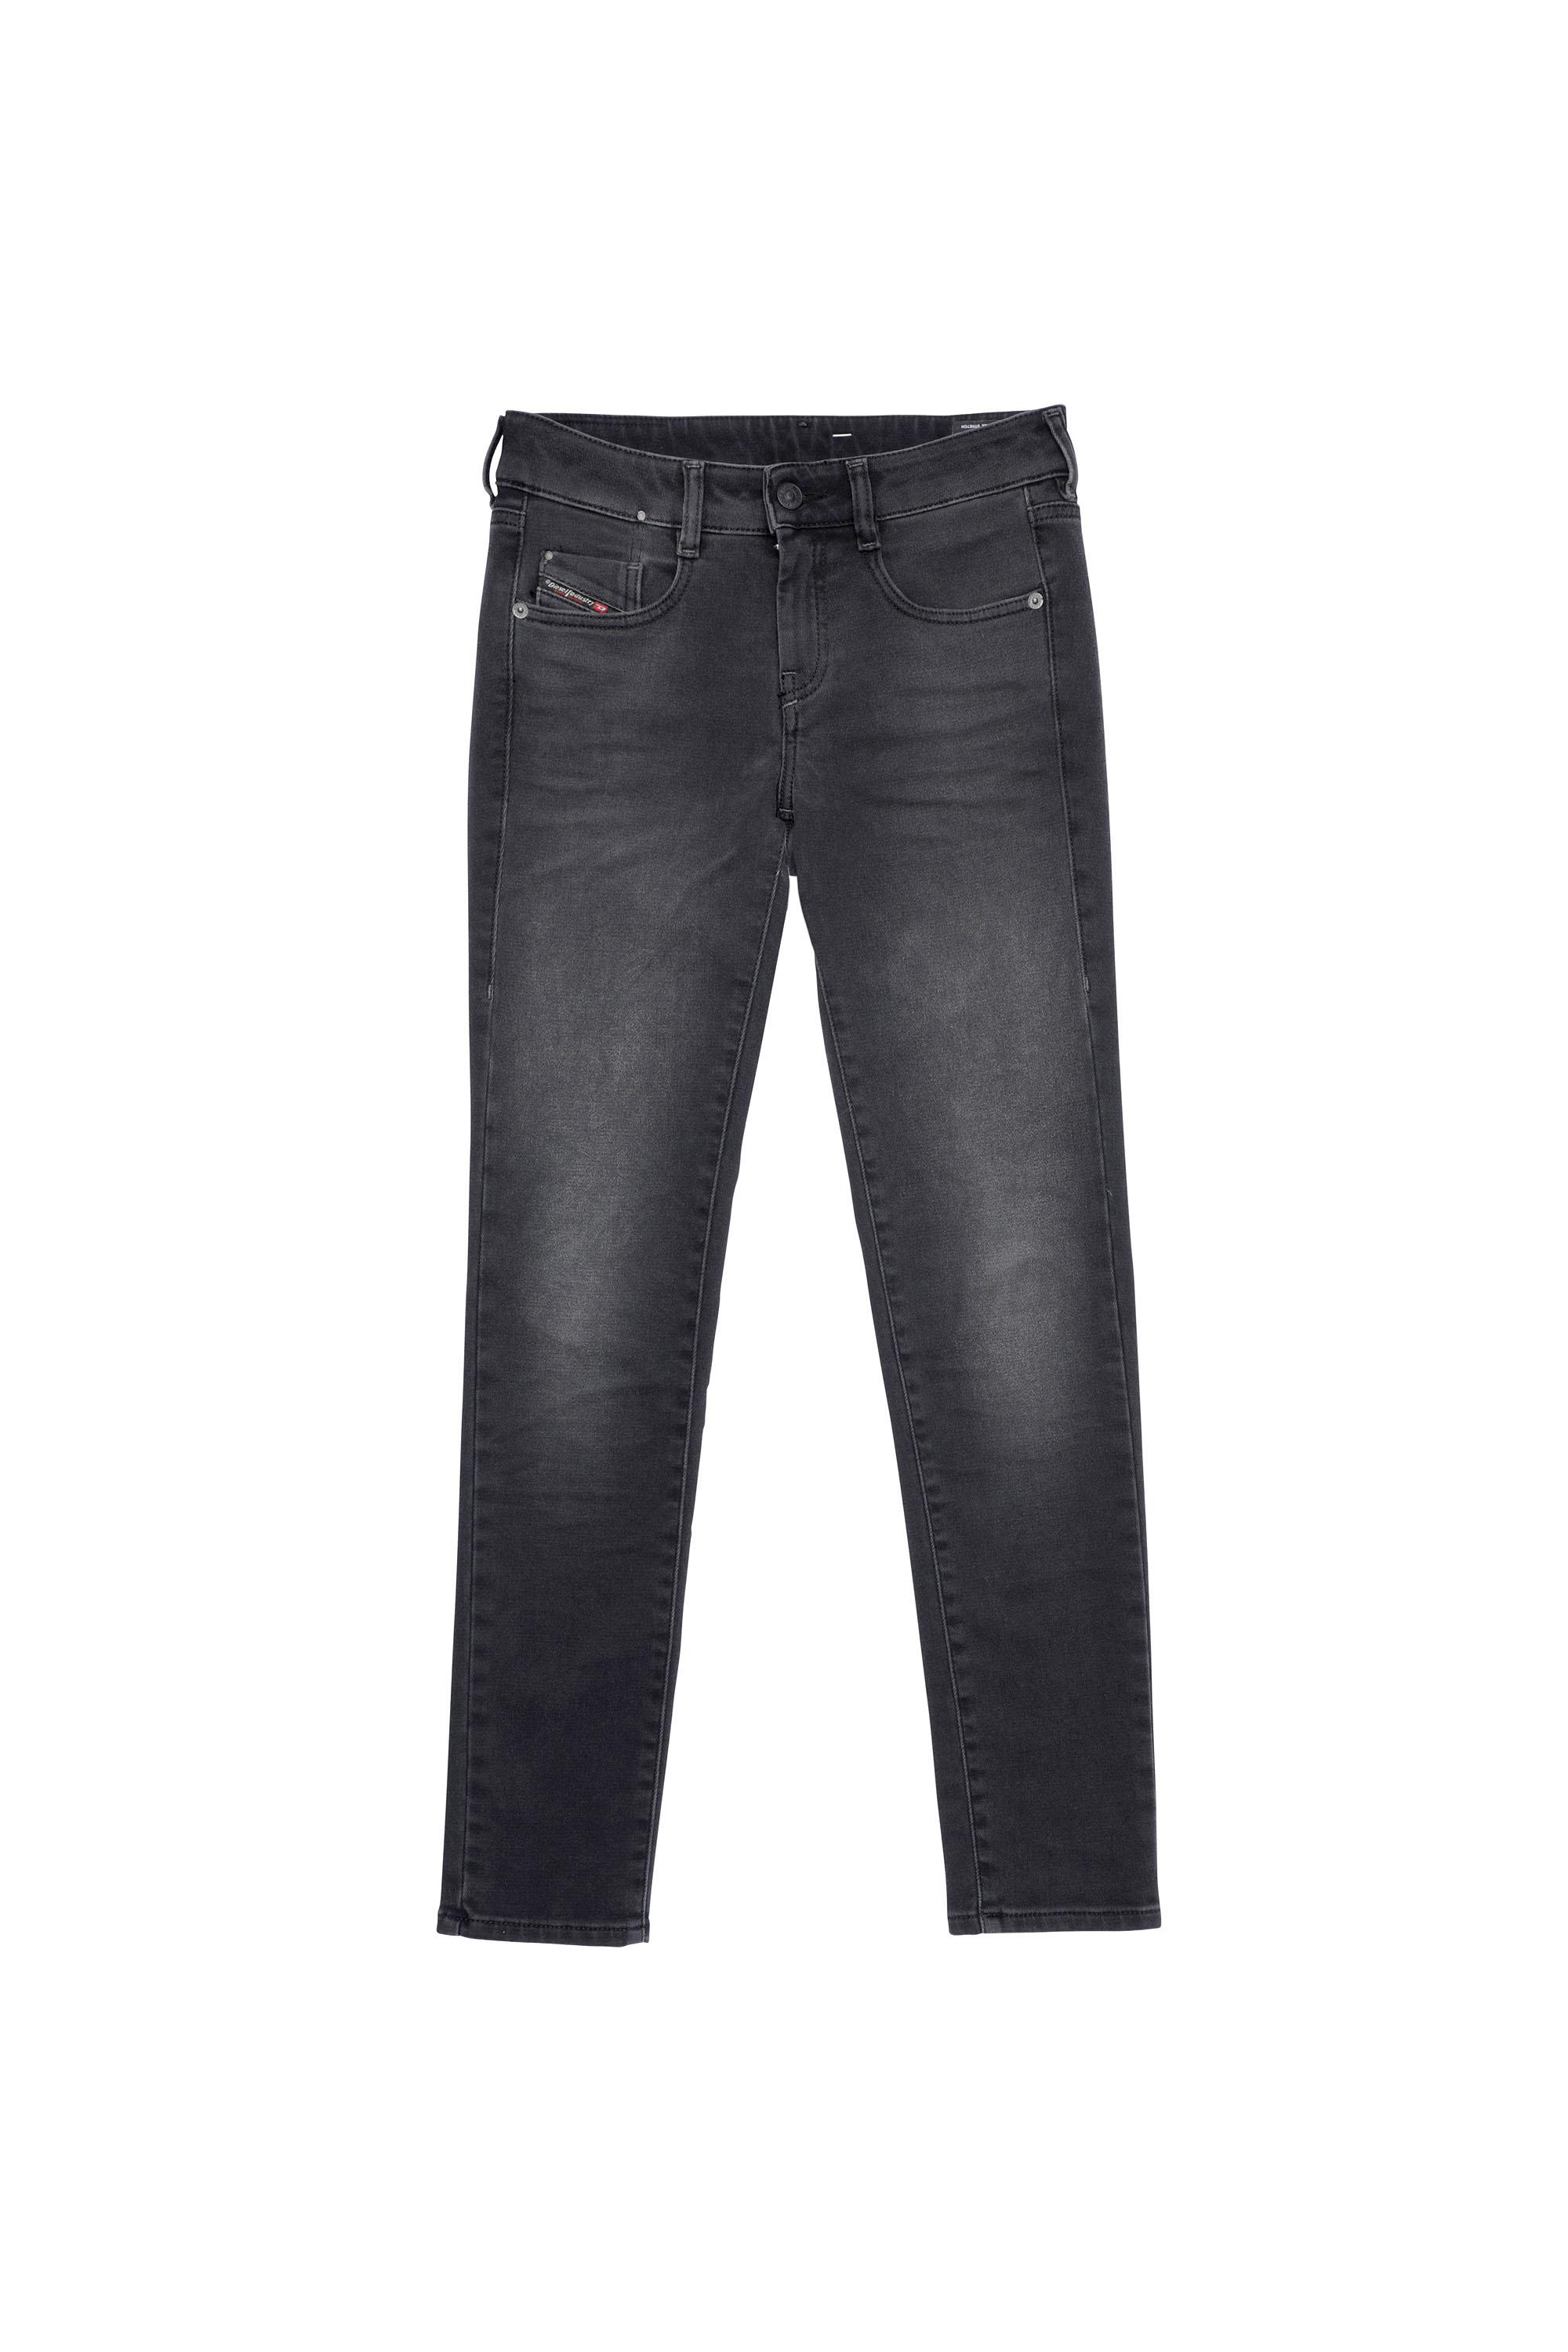 Diesel - D-Ollies Slim JoggJeans® 09B22, Black/Dark grey - Image 2